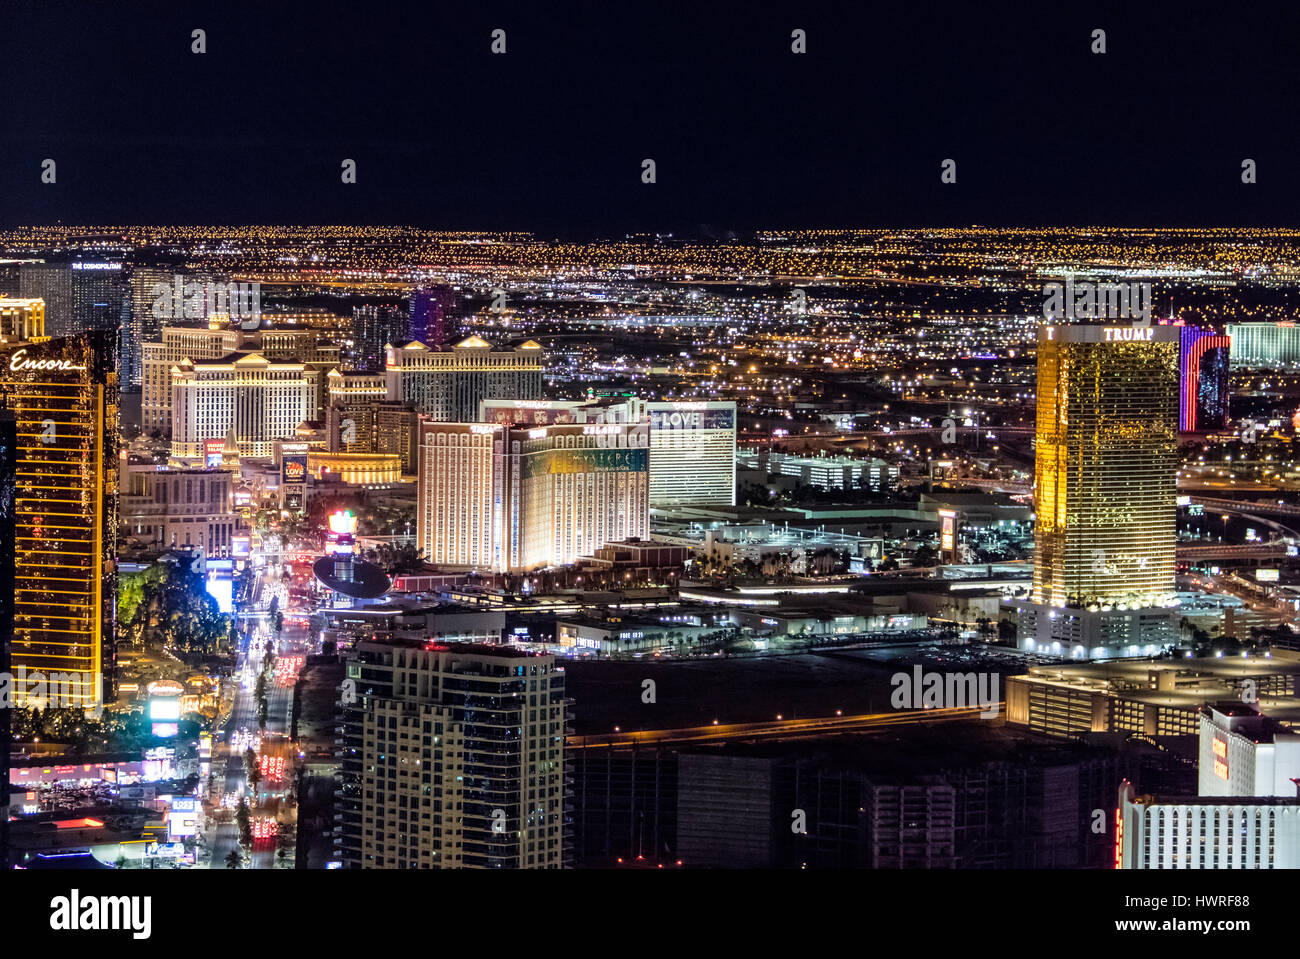 Aerial view of Las Vegas Strip at night - Las Vegas, Nevada, USA Stock Photo